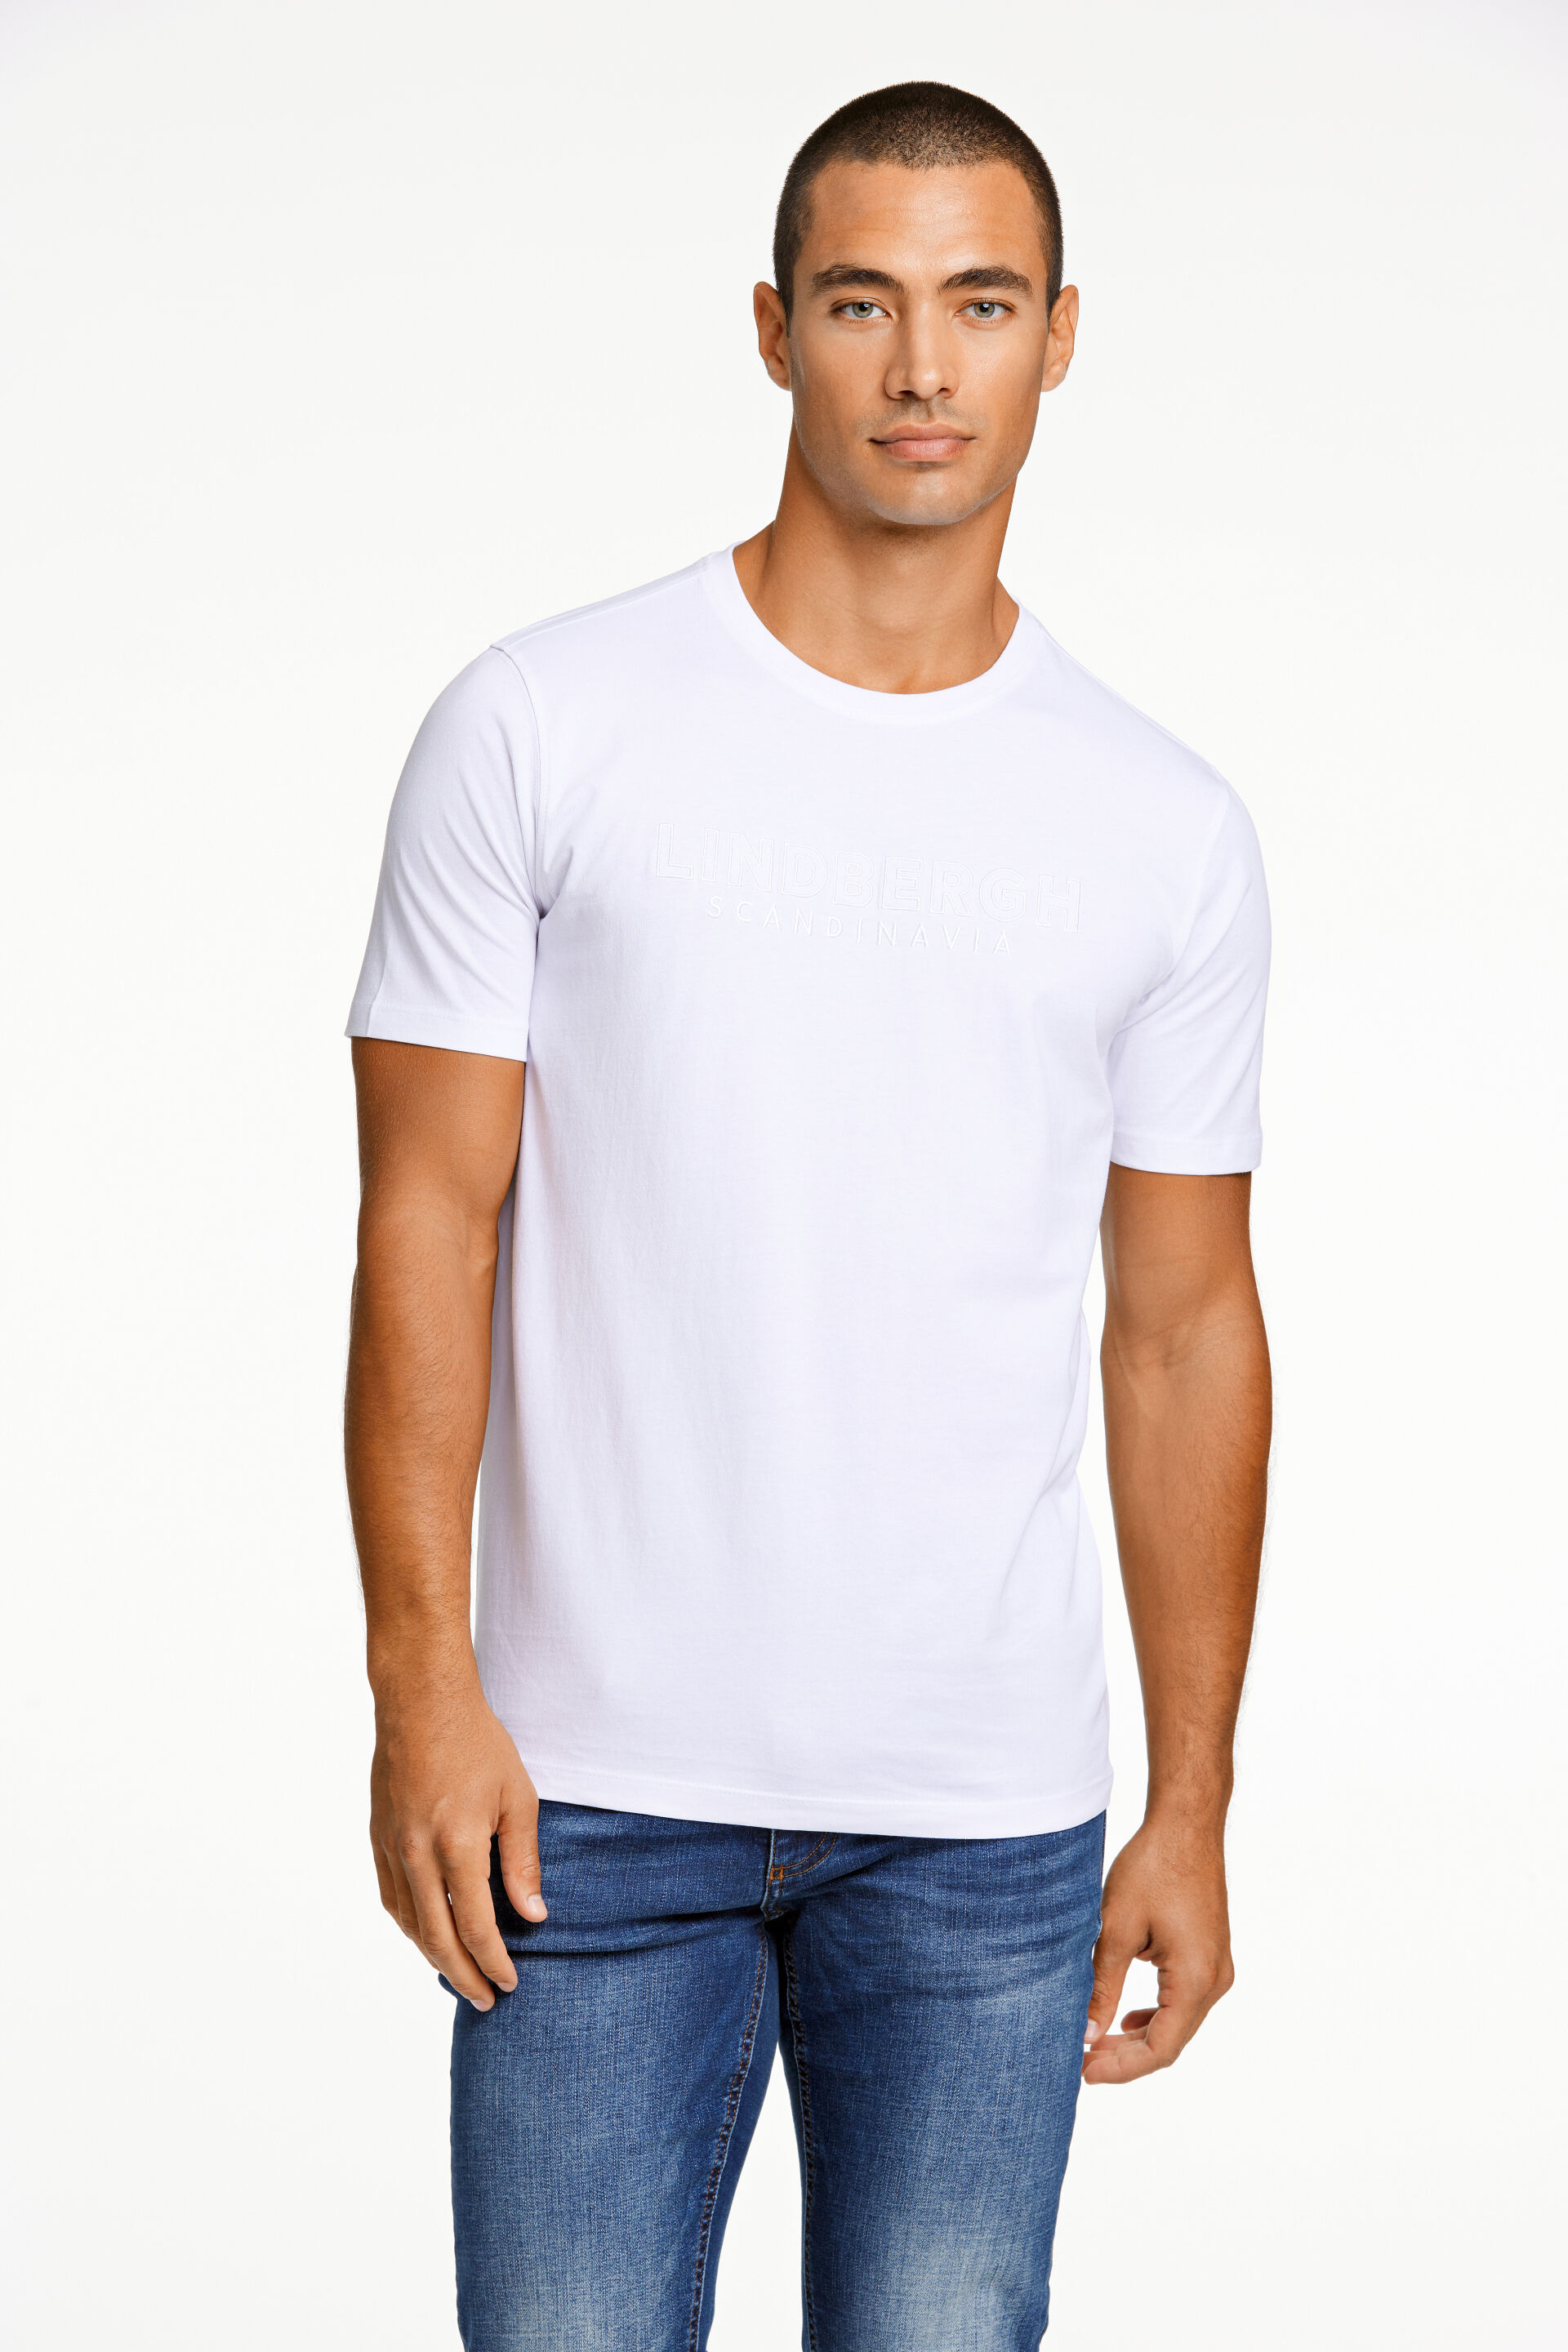 T-shirt T-shirt Weiss 30-400237